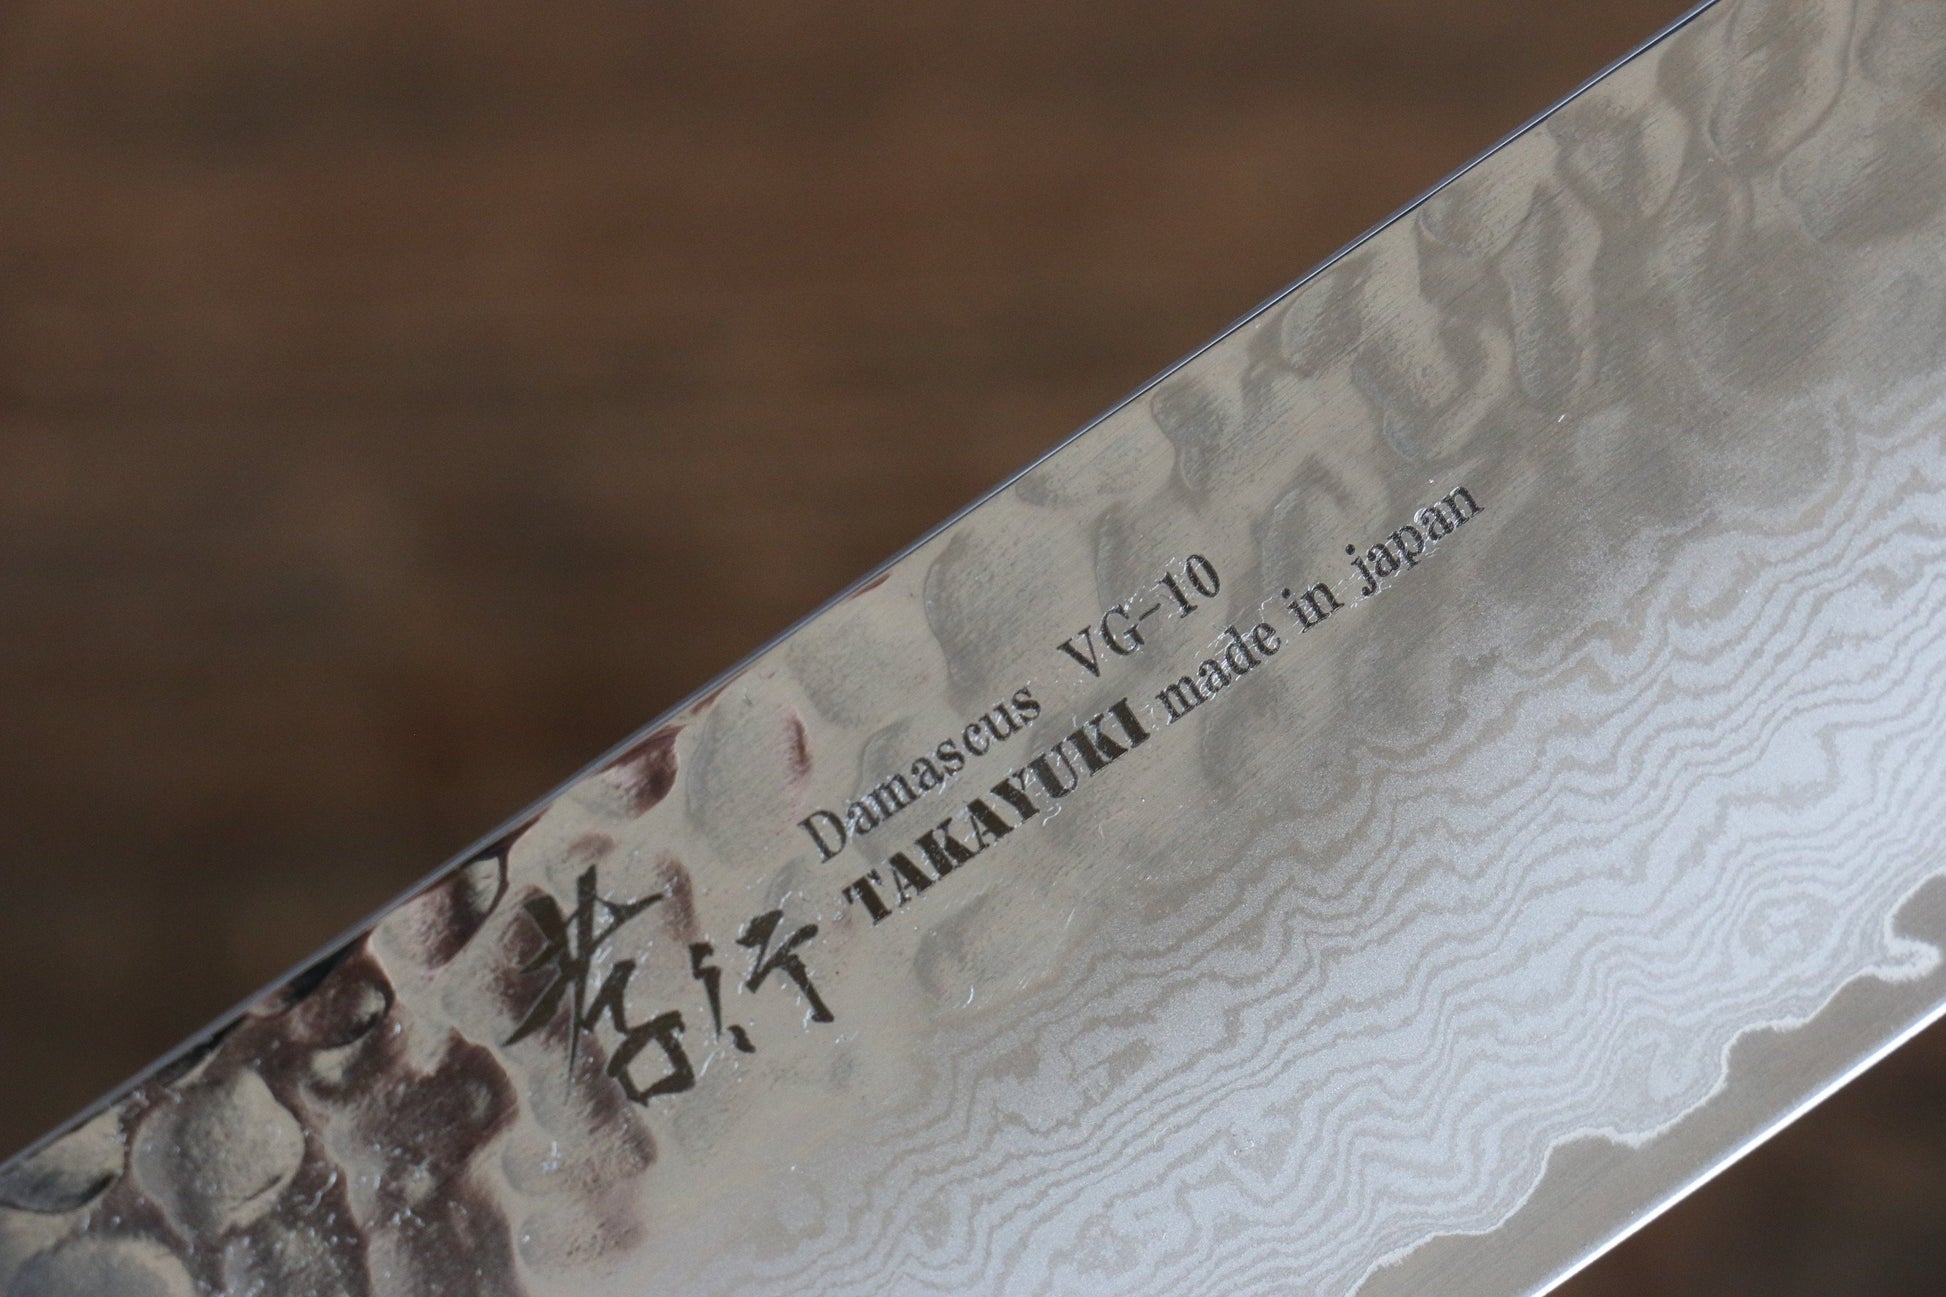 Sakai Takayuki VG10 33 Layer Damascus Nakiri Japanese Knife 160mm with Live oak Lacquered (Kokushin) Handle - Japanny - Best Japanese Knife